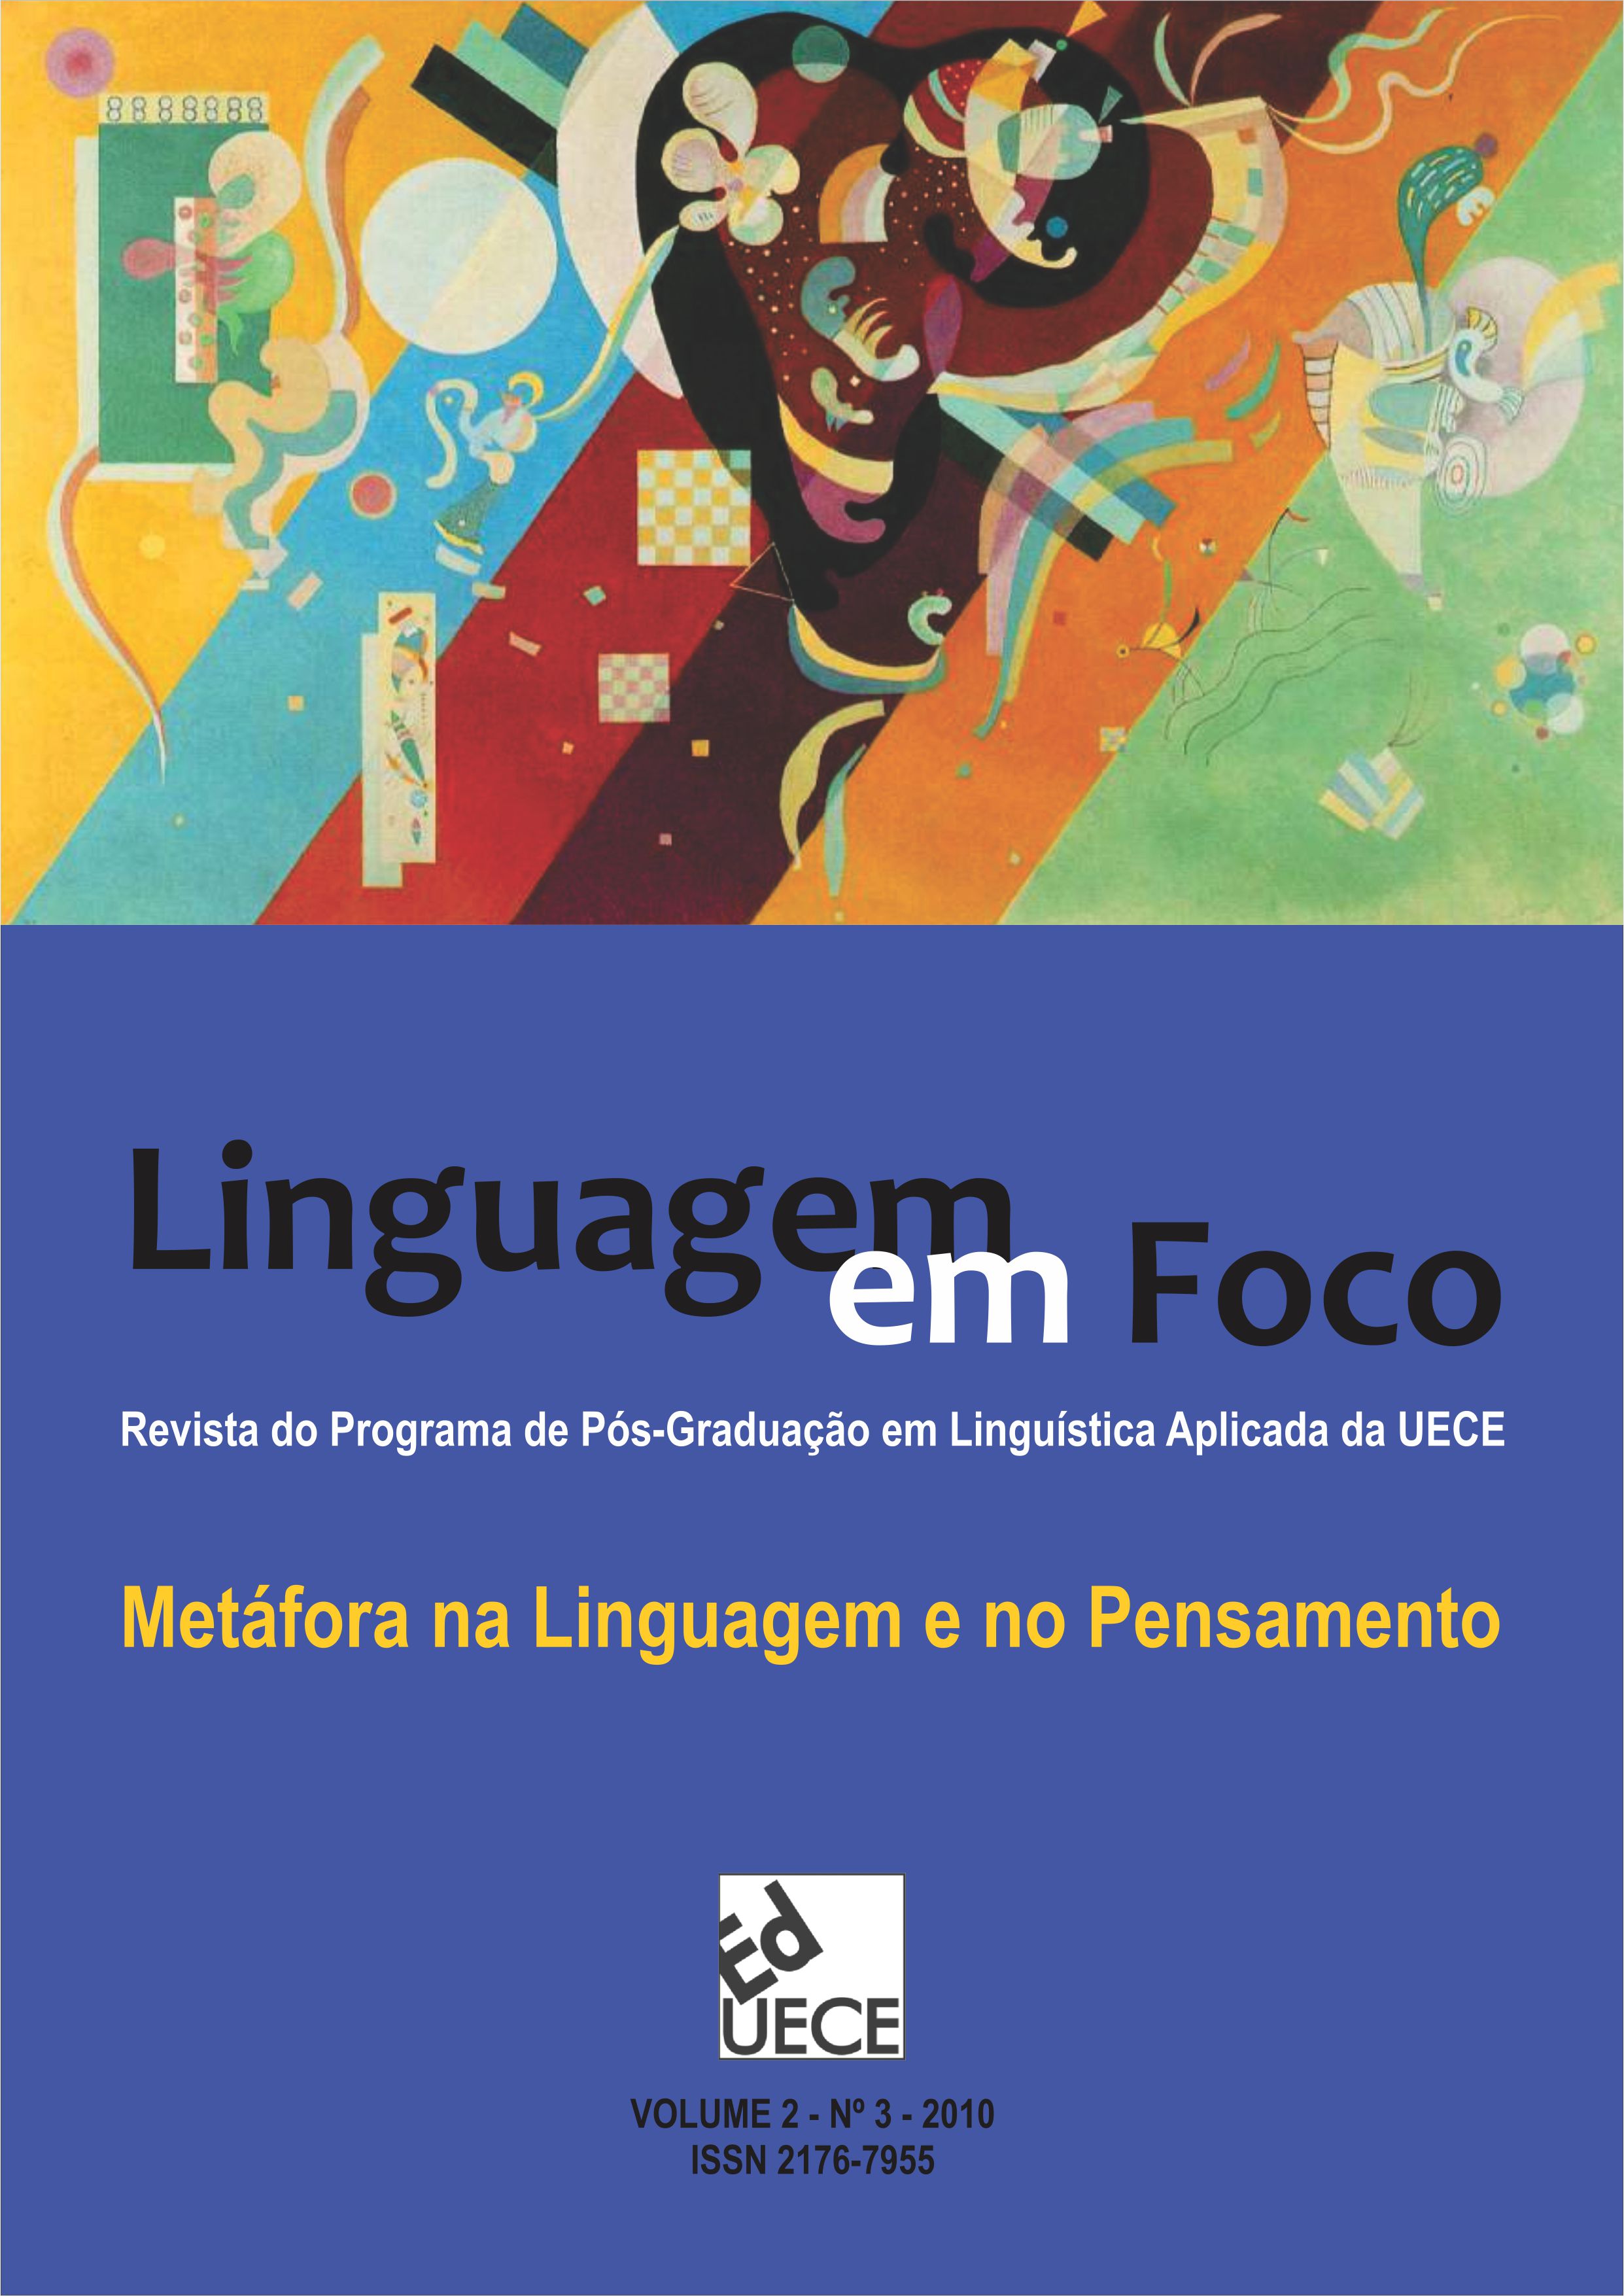 					Ver Vol. 2 Núm. 3 (2010): Linguagem em Foco - Volume Temático: Metáfora na Linguagem e no Pensamento
				